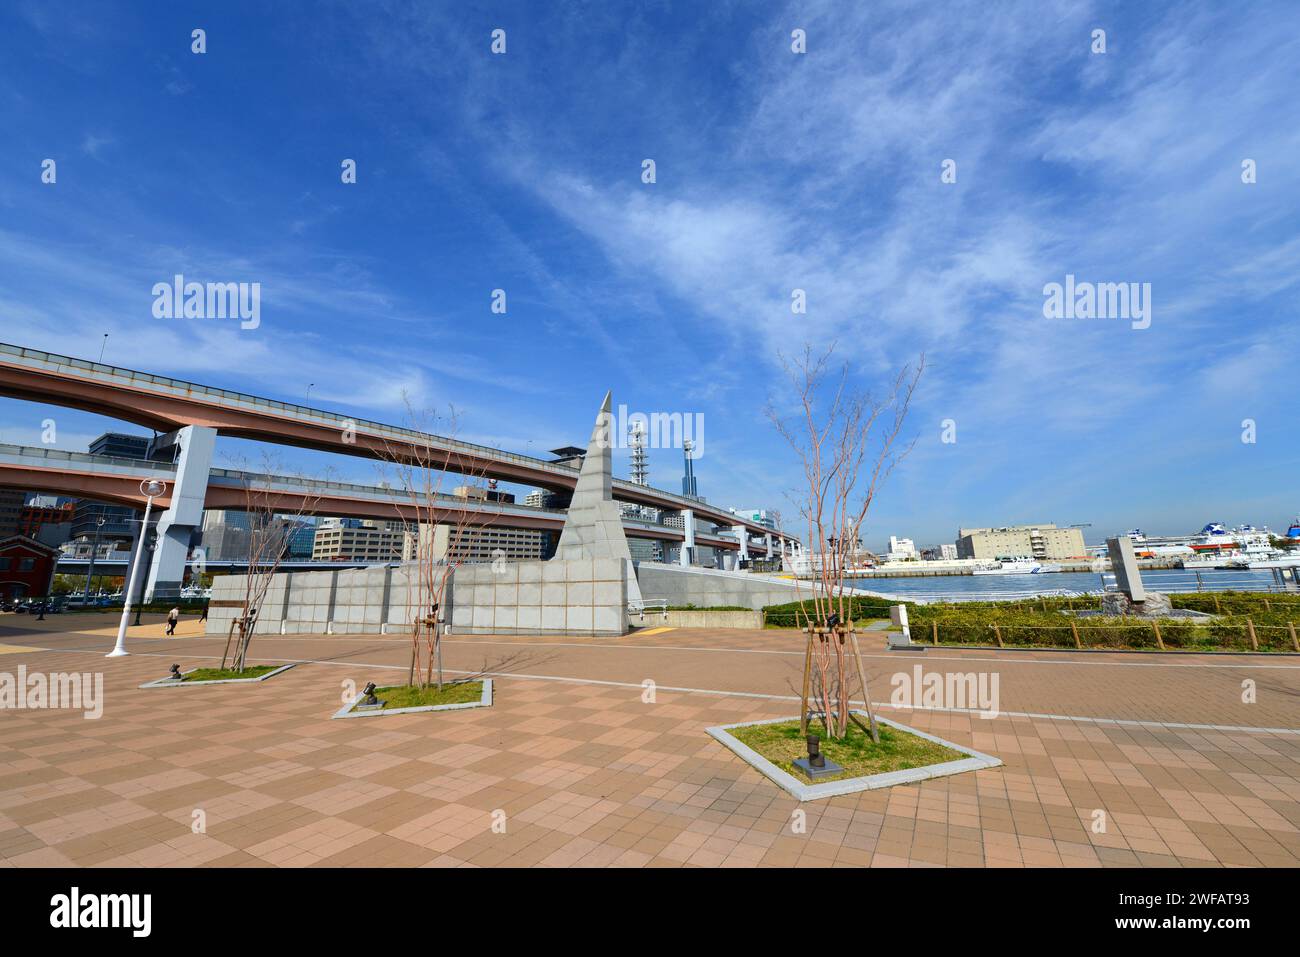 The port of Kobe earthquake memorial park in Kobe, Japan. Stock Photo